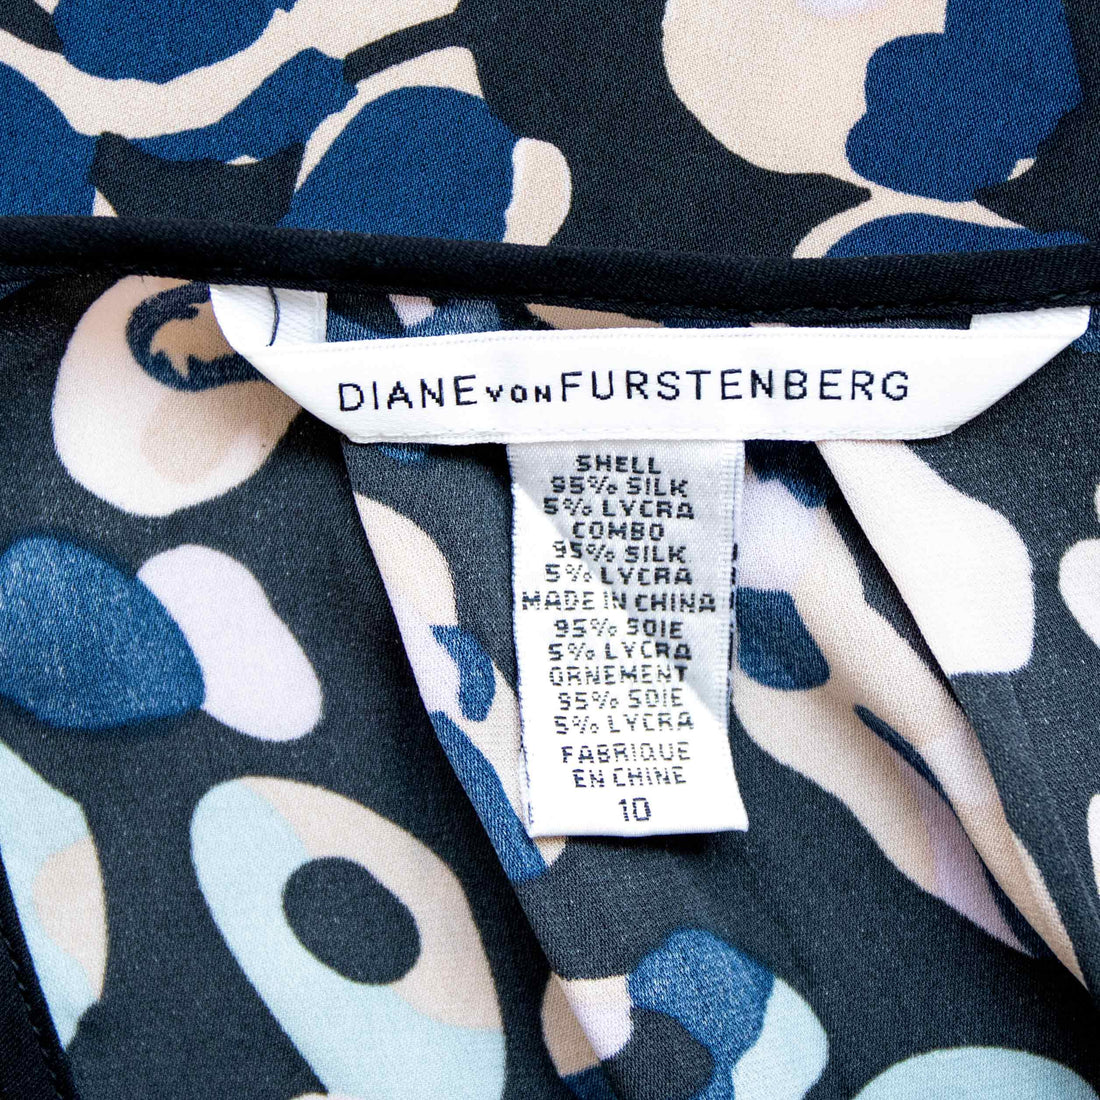 Diane von Furstenberg silk blouse with graphic print